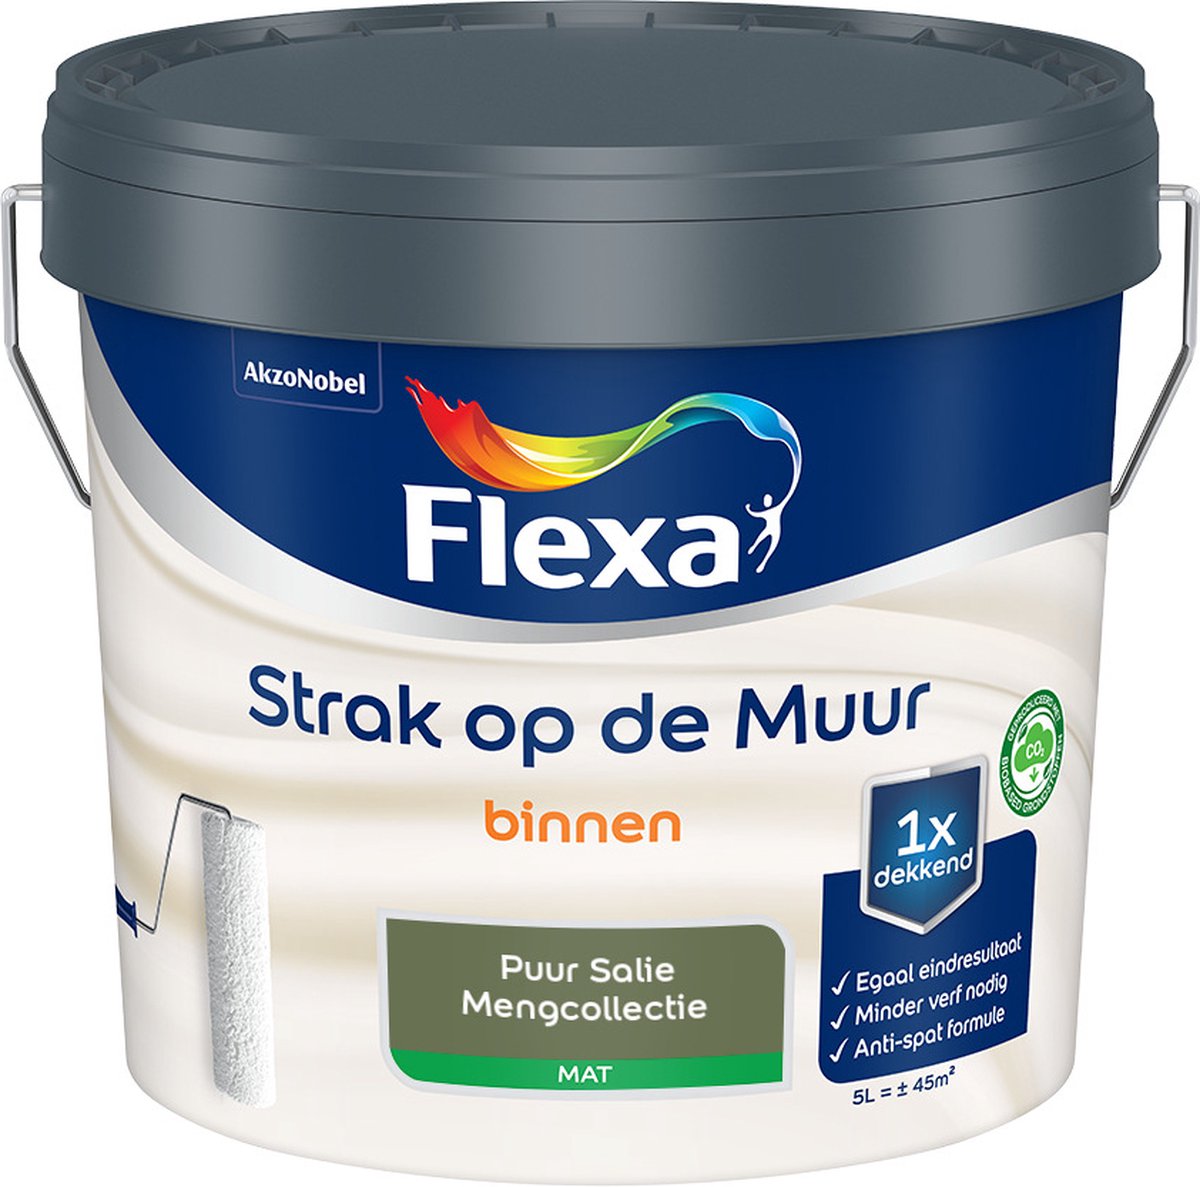 Flexa Strak op de muur - Muurverf - Mengcollectie - Puur Salie - 5 Liter